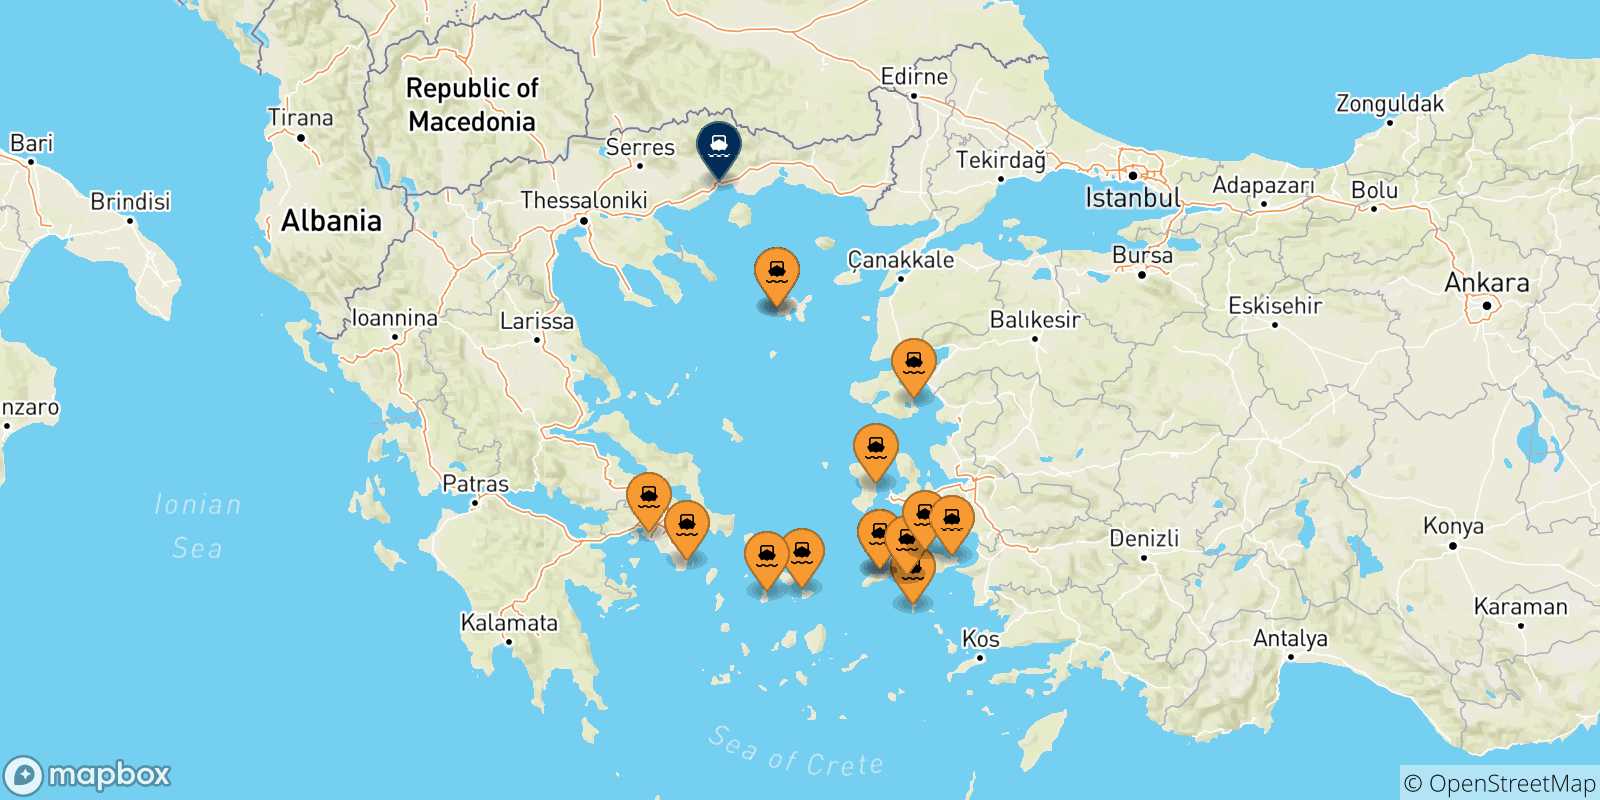 Mappa delle possibili rotte tra la Grecia e Kavala